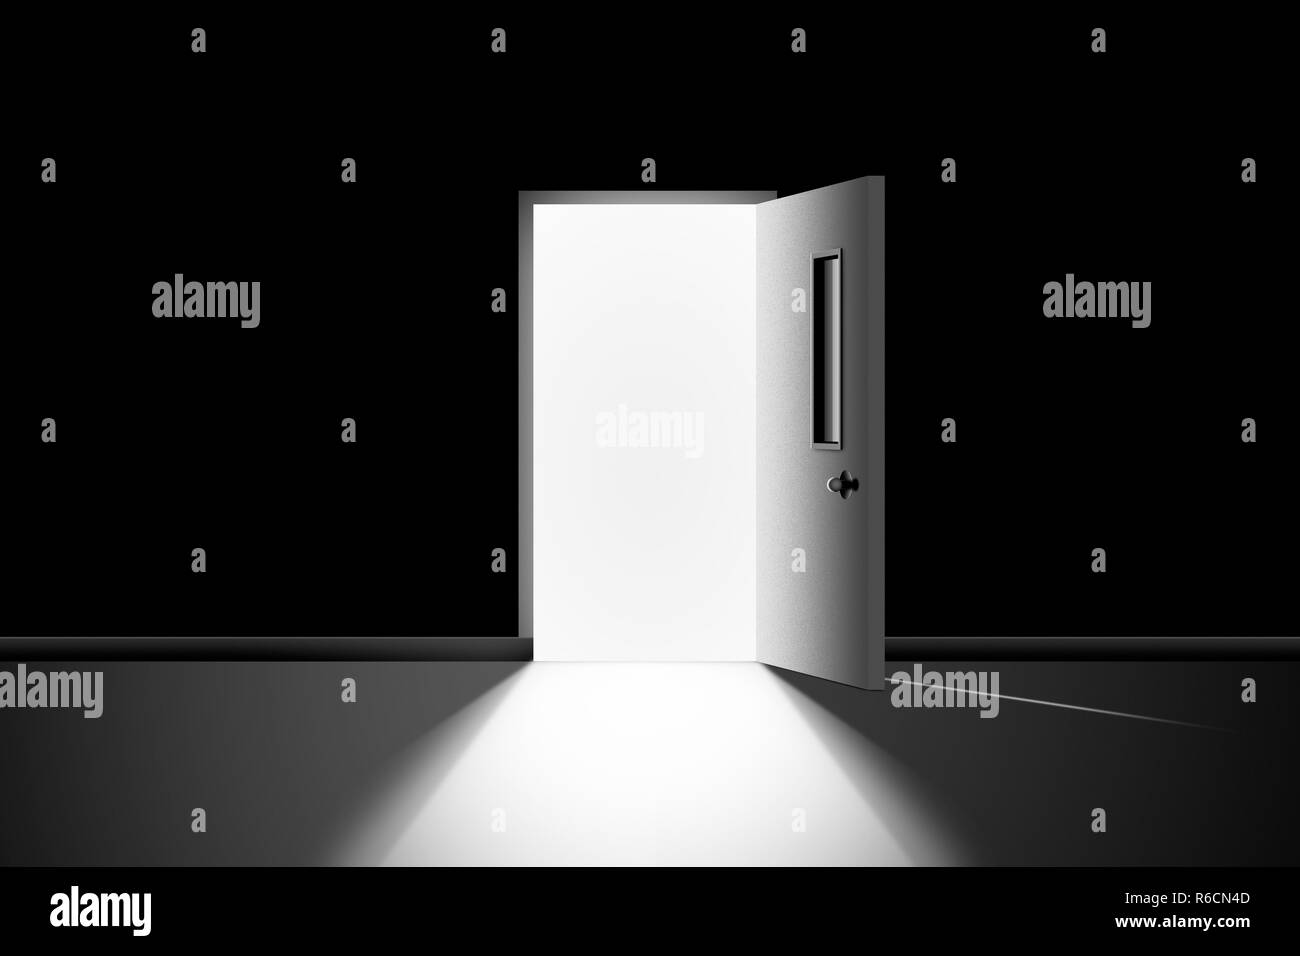 Bianco e nero immagine digitale della porta aperta in una stanza buia che conduce ad una intensa luce accecante Foto Stock